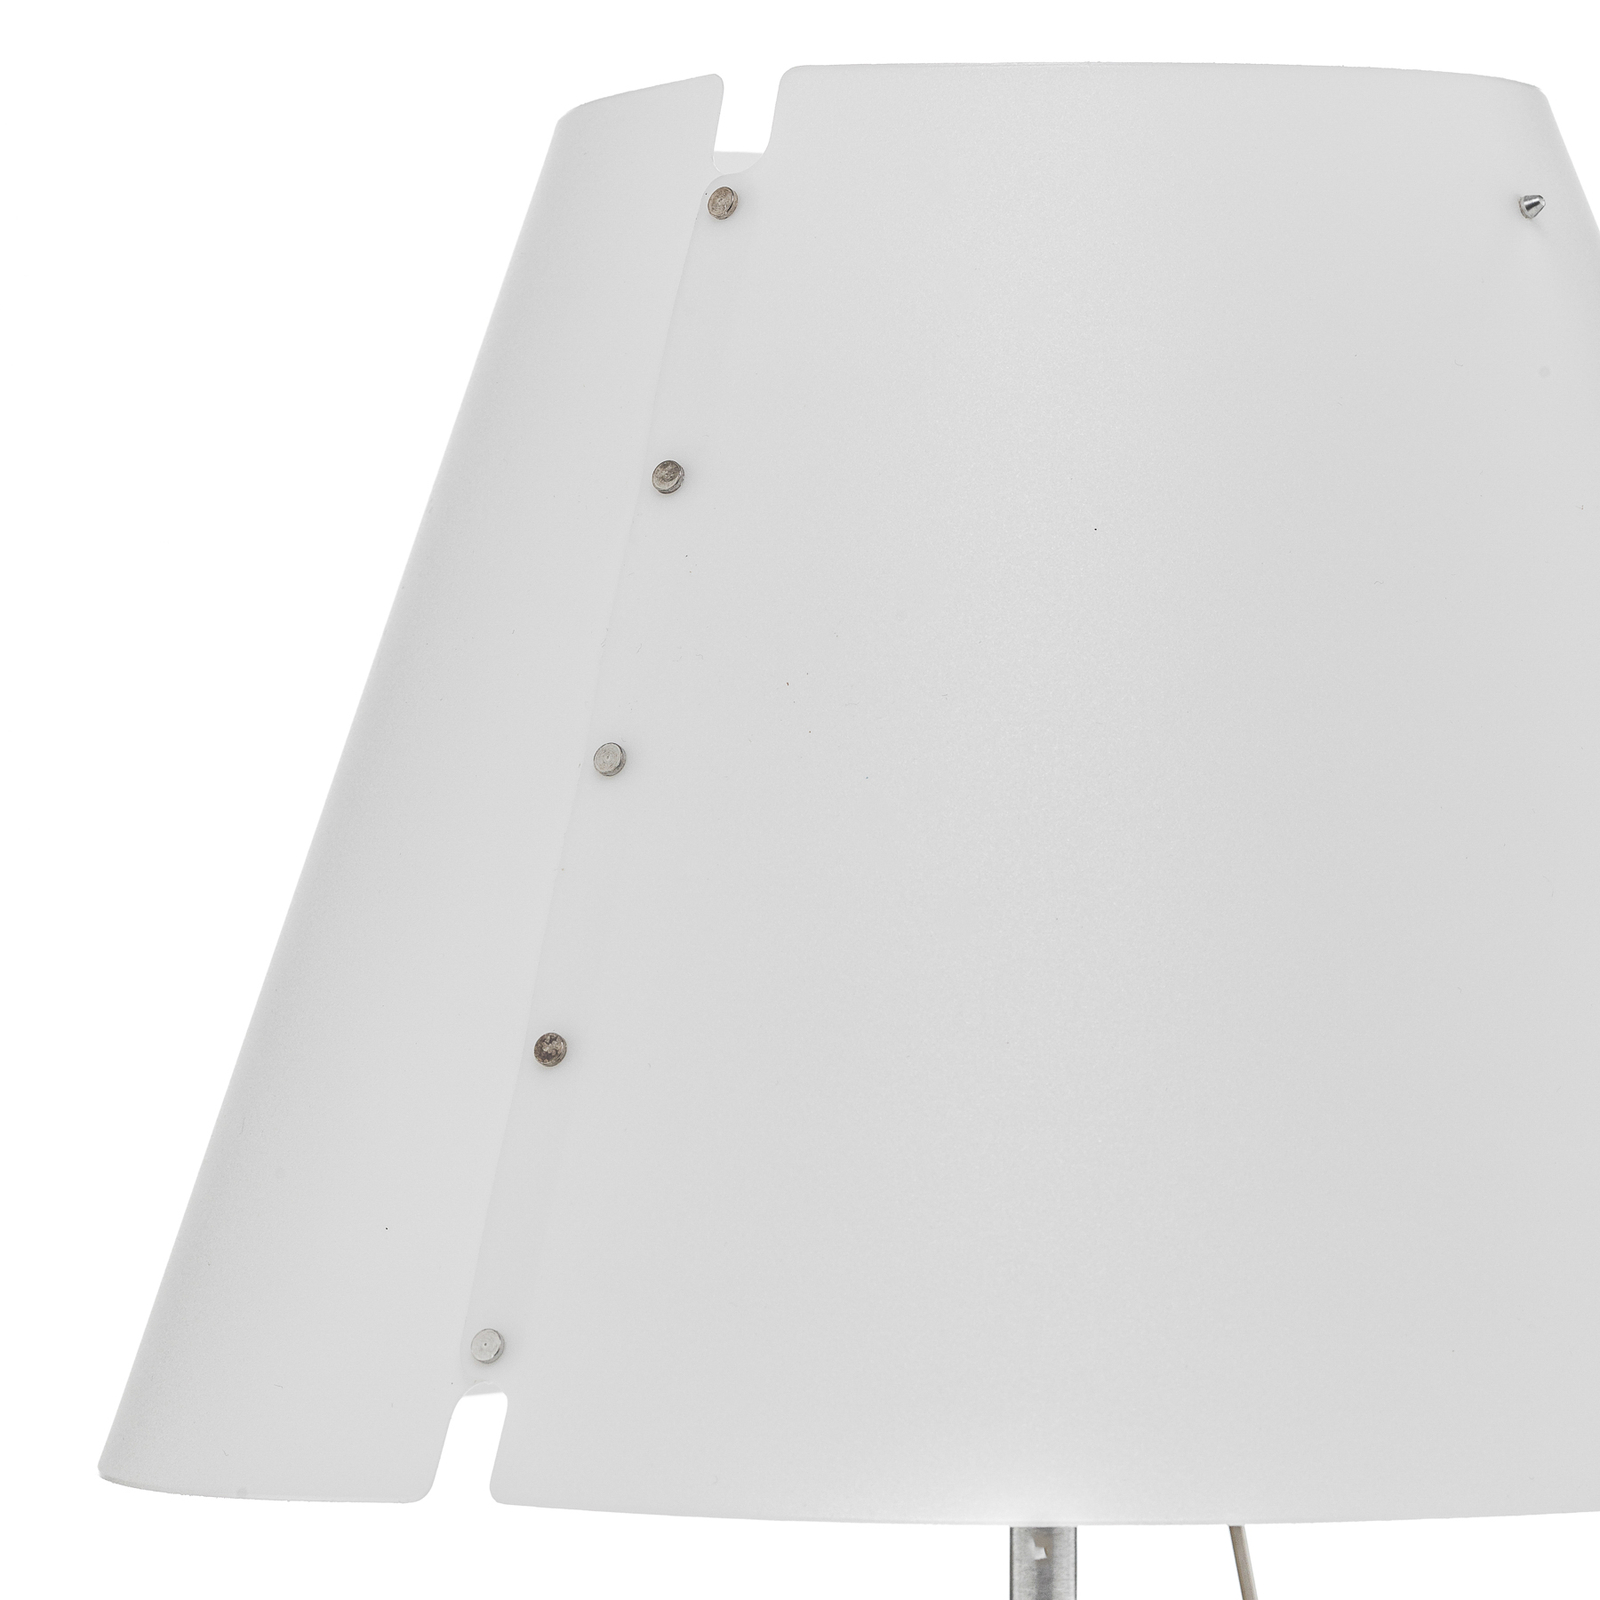 Luceplan Costanzina stolní lampa hliník, bílá